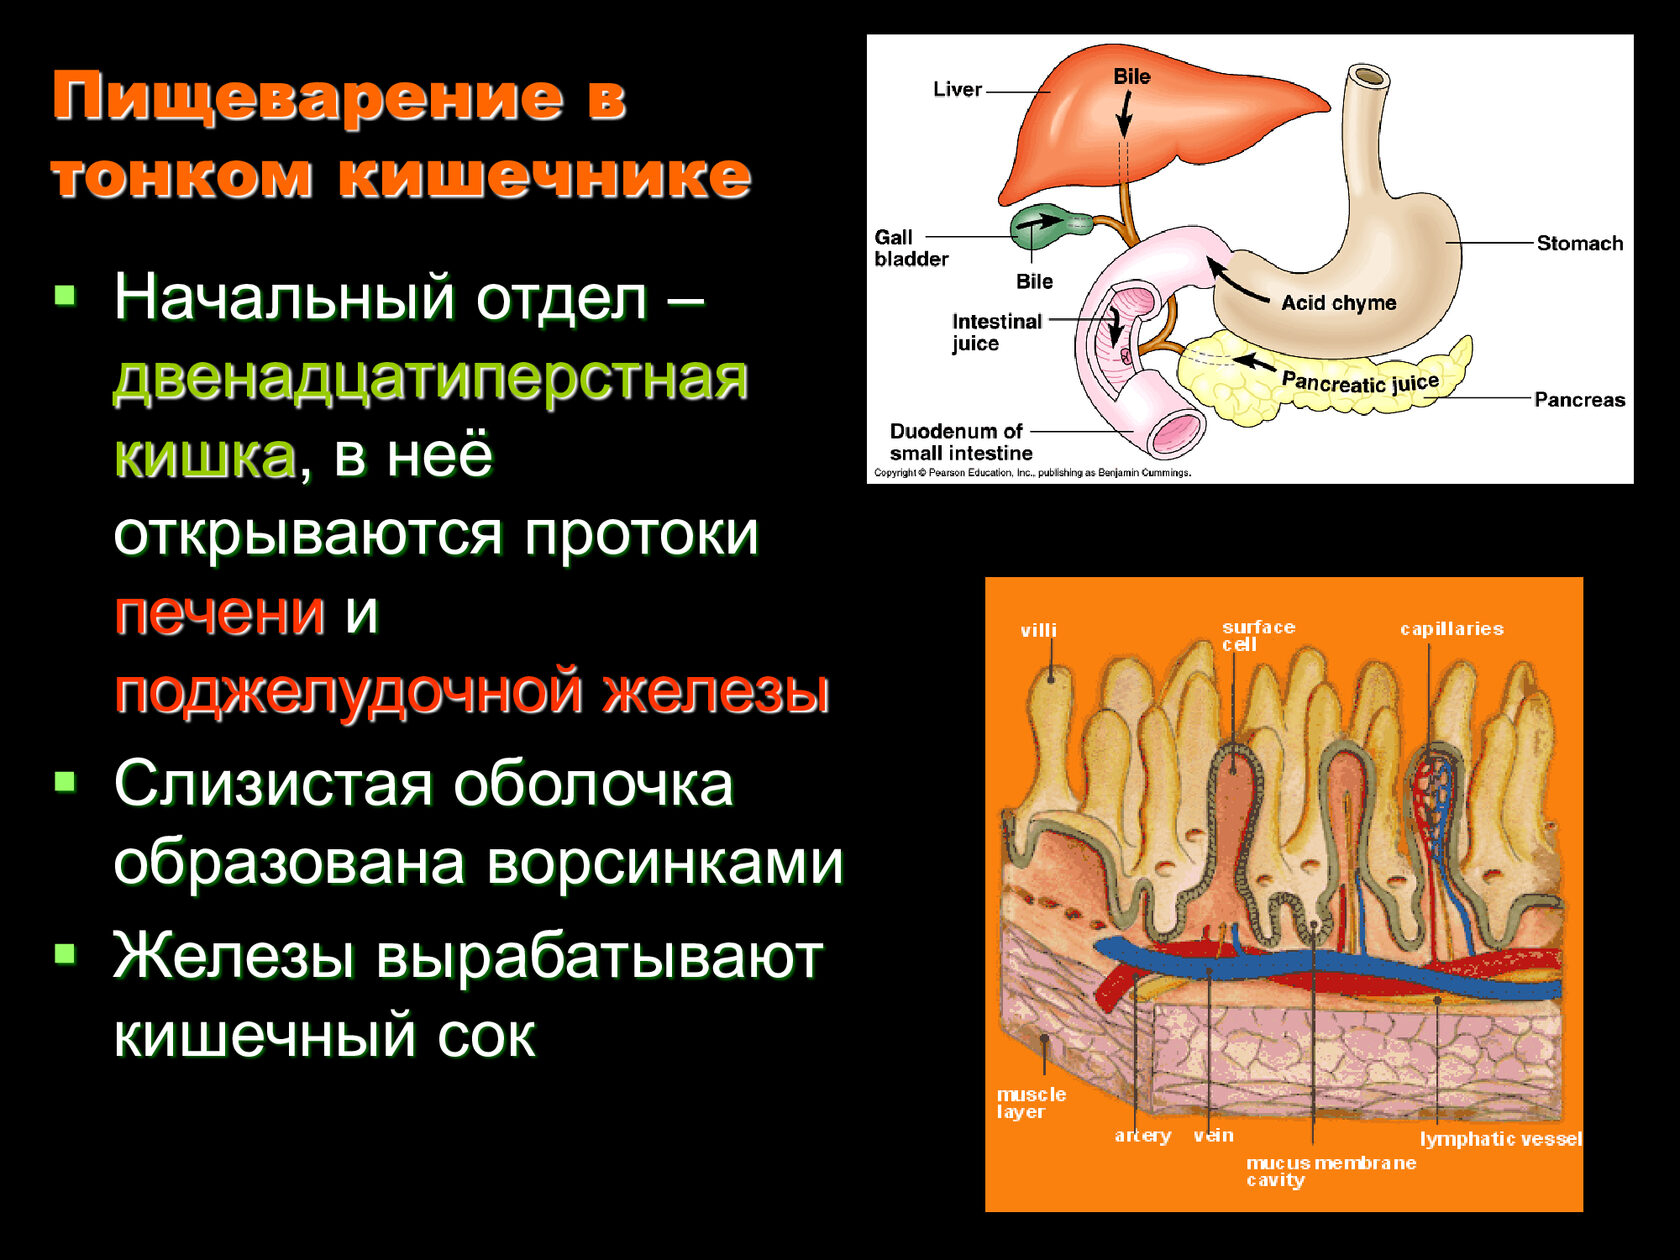 Железы участвующие в процессе пищеварения. Пищеварительные железы тонкого кишечника. Пищеварительные железы и соки в тонком кишечнике. Пищеворителтные желещв. Железы тонкого кишечника строение.